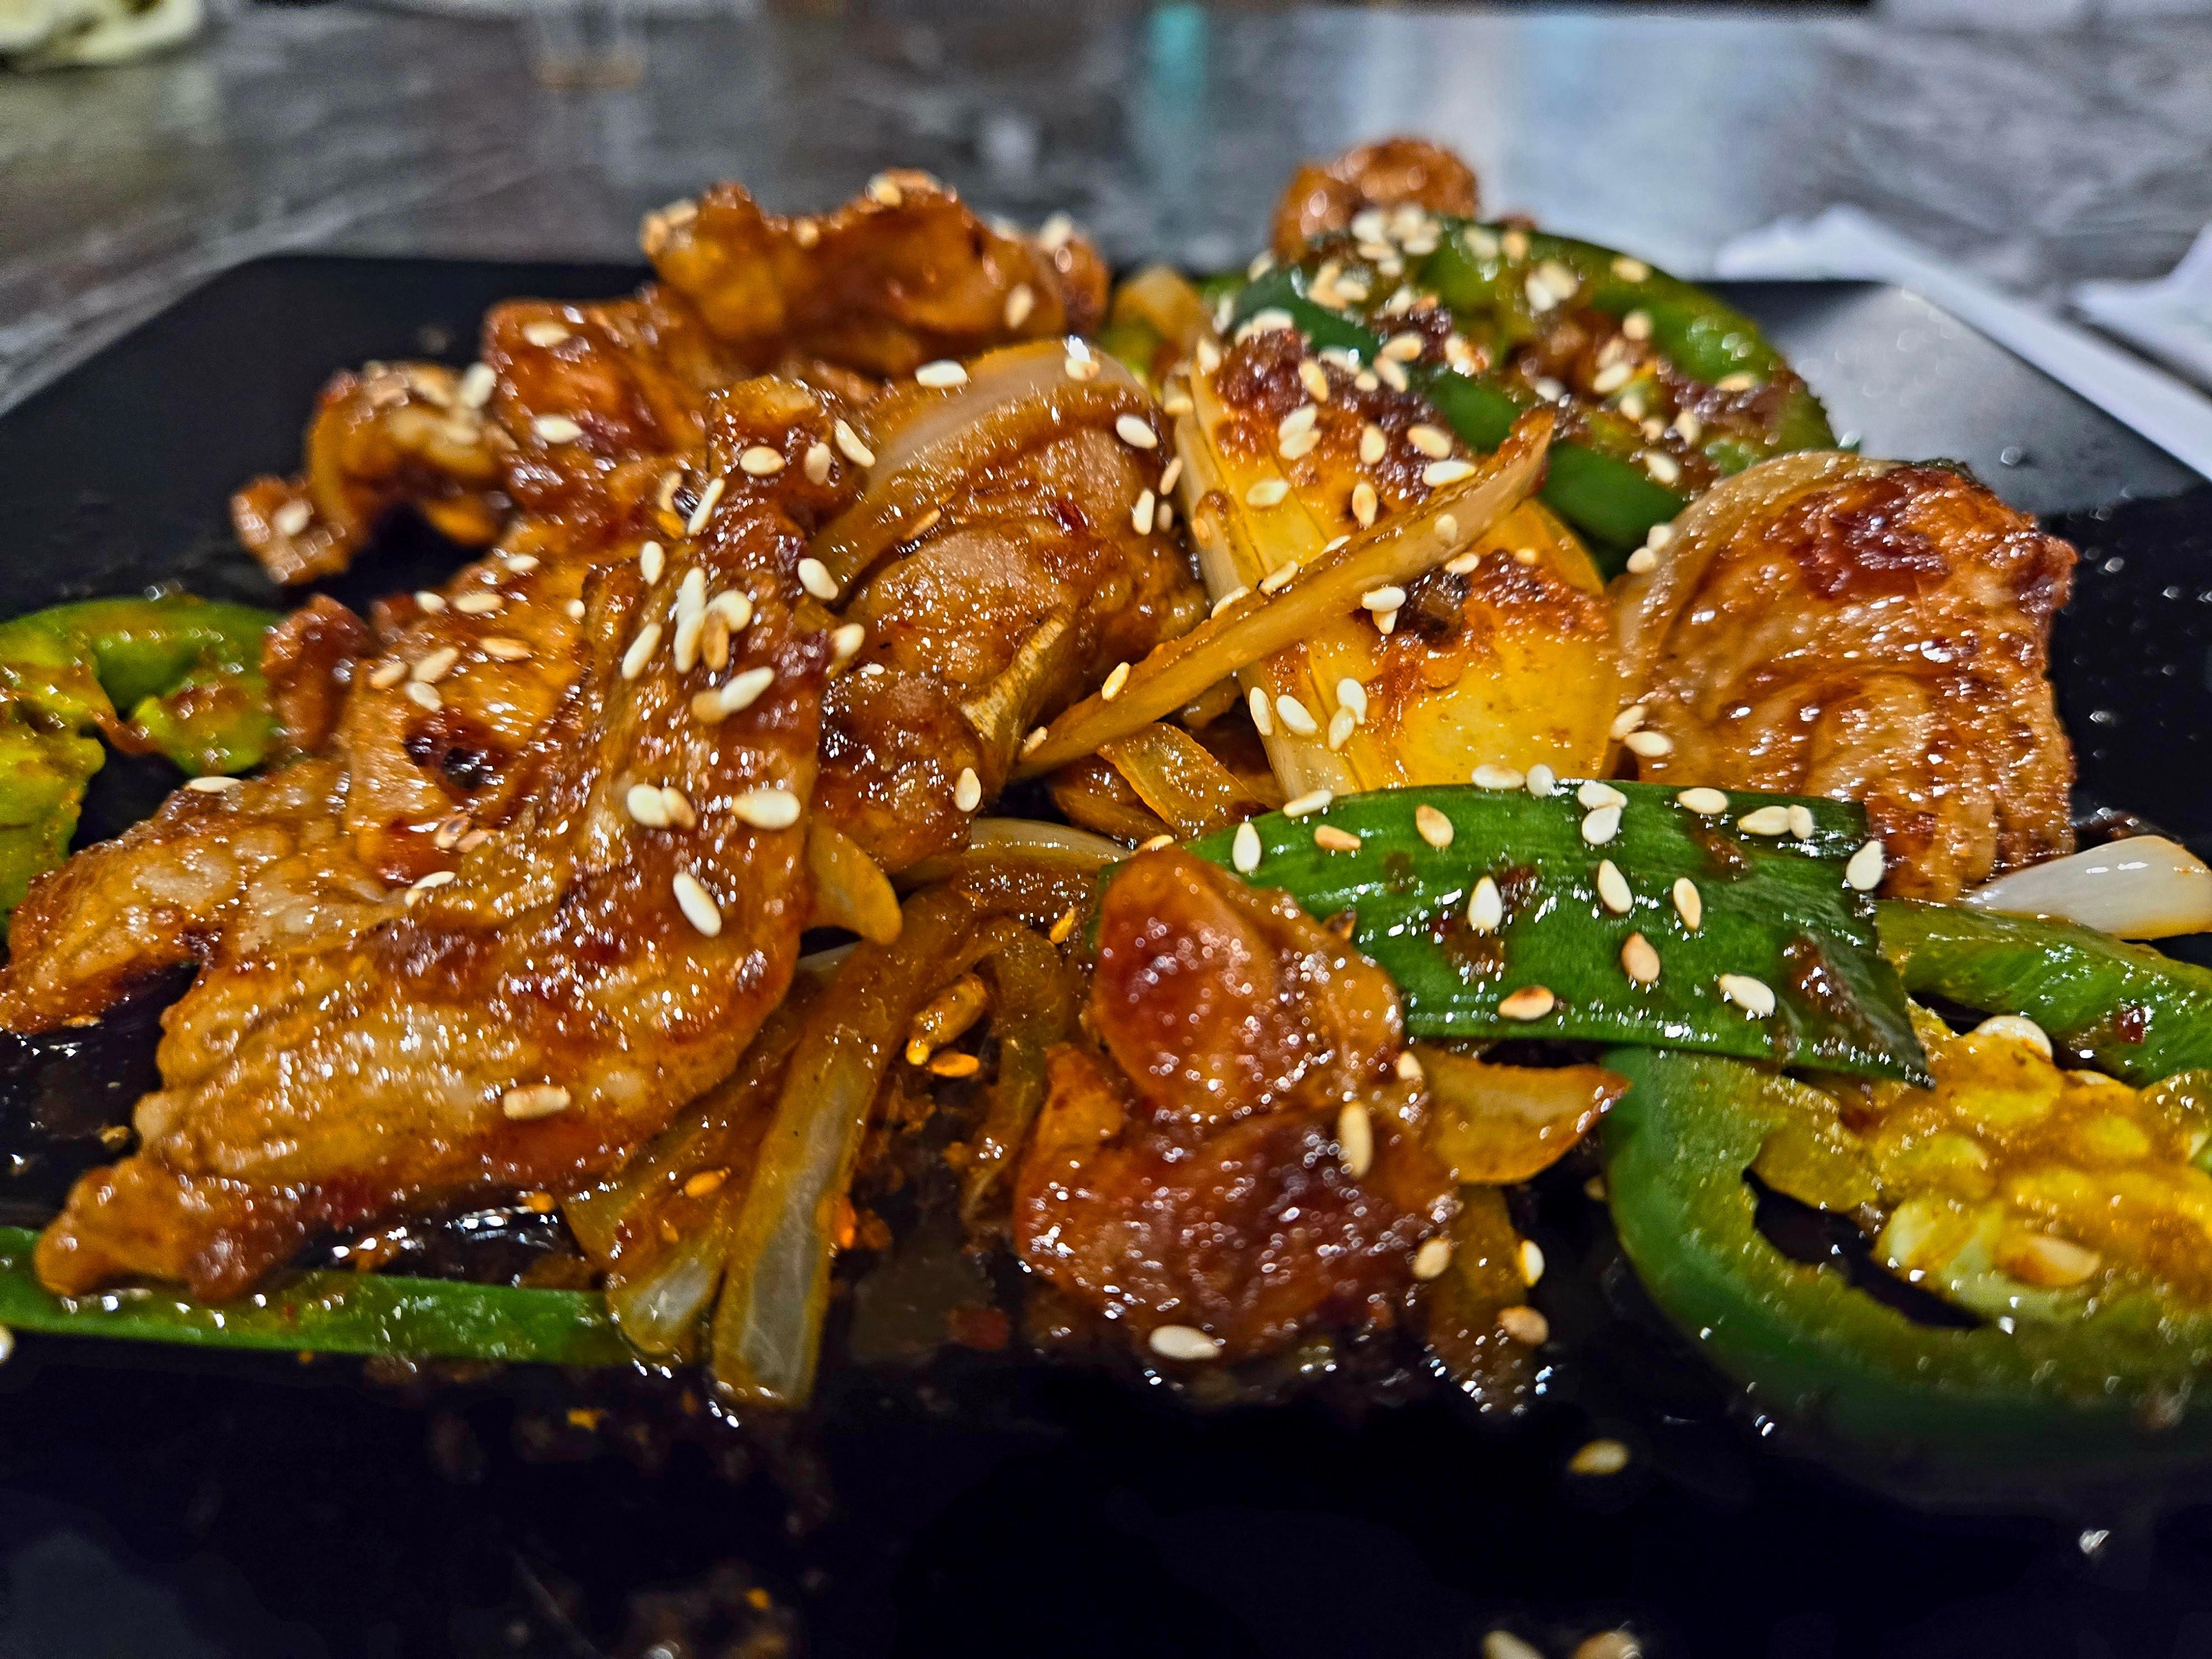 Jeyuk Bokkeum (Spicy Pork dinner)